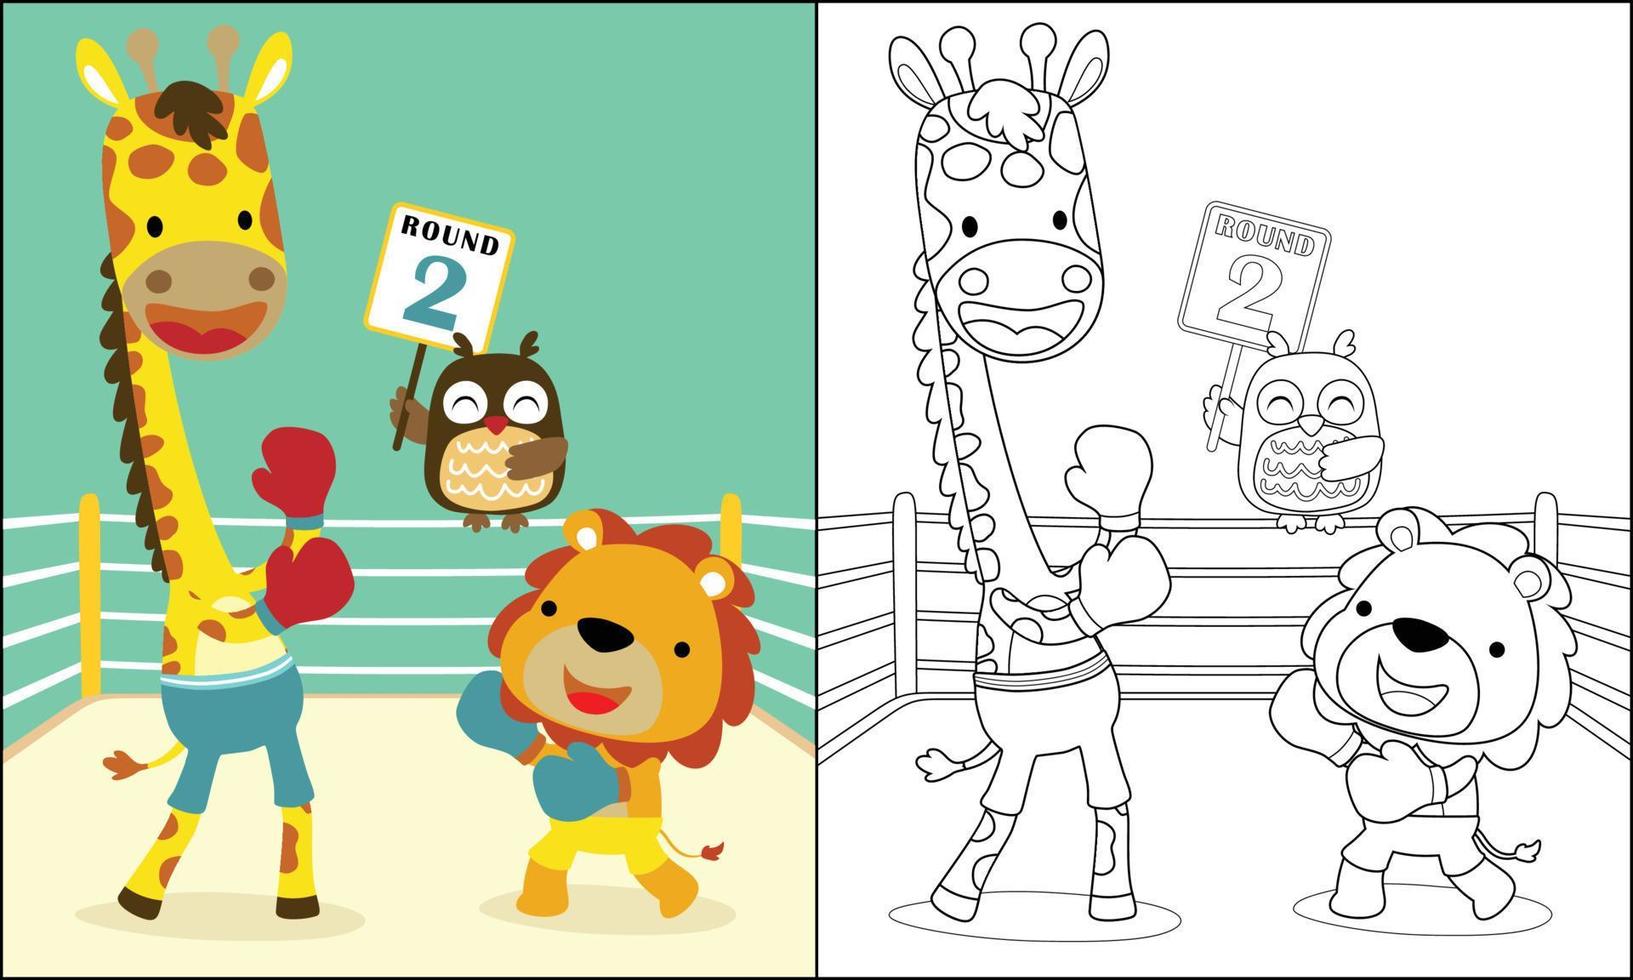 grappig boksen bij elkaar passen met giraffe vs leeuw, uil Holding boksen bord, kleur boek of bladzijde vector